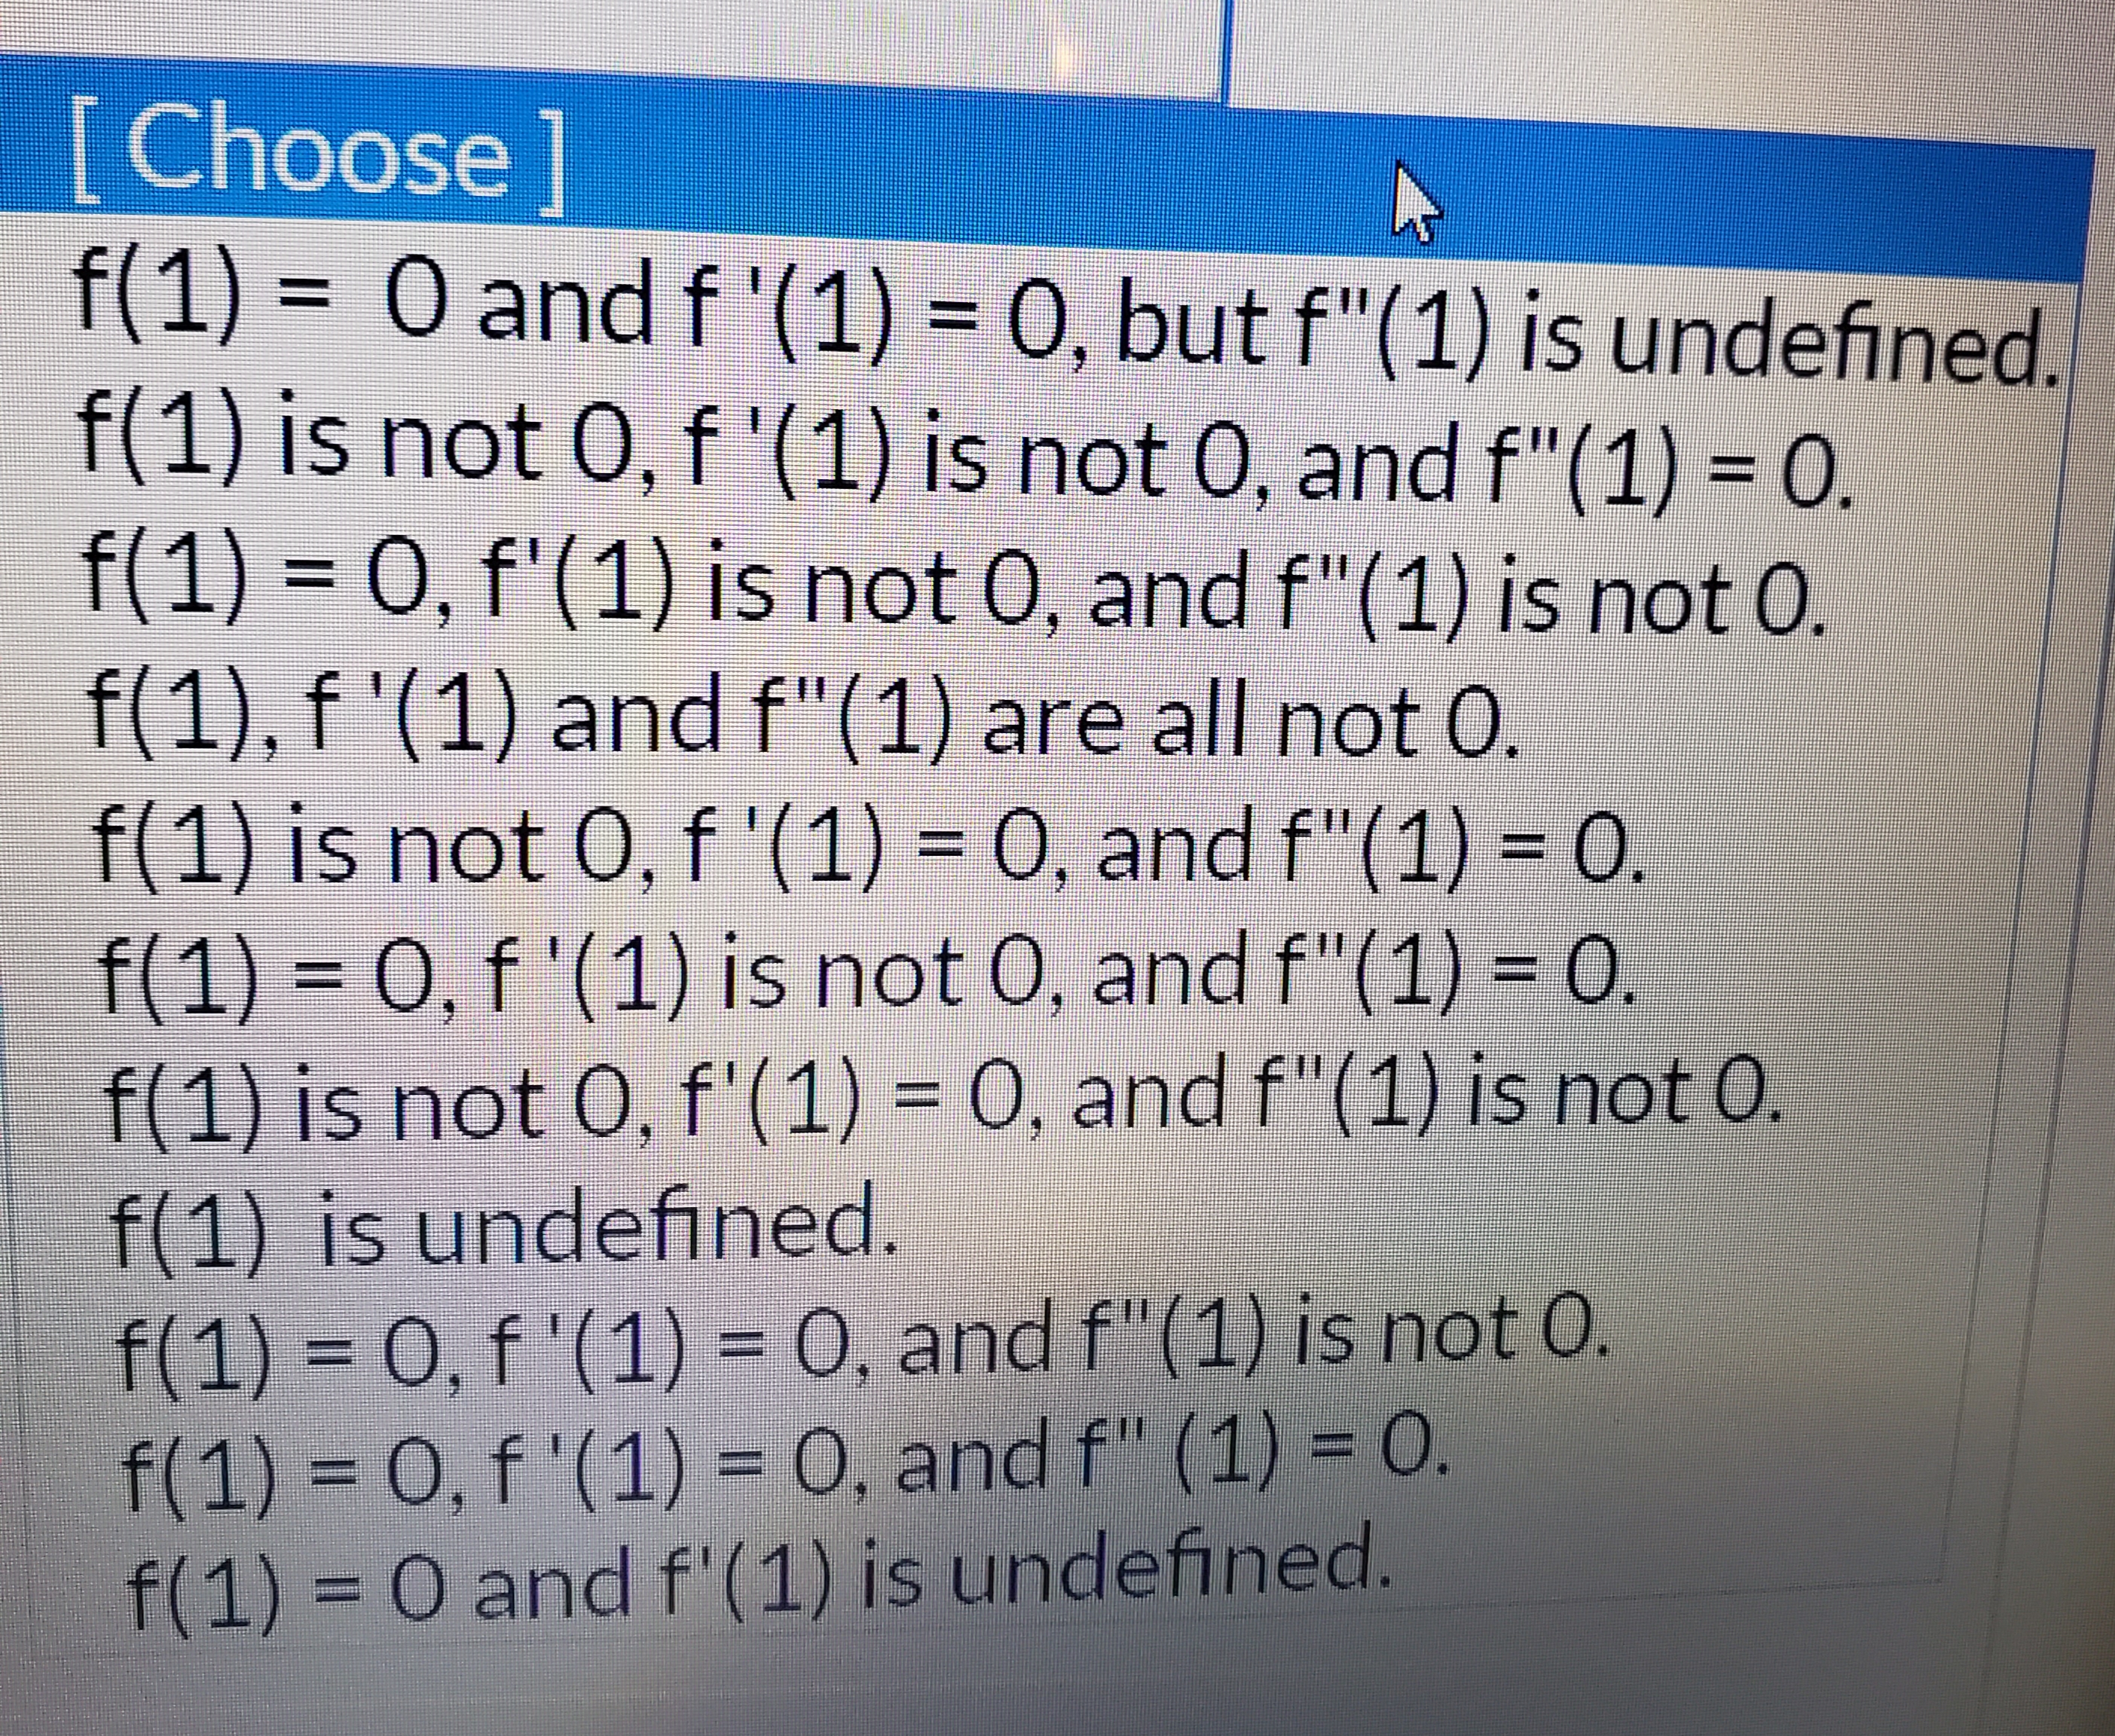 [Choose
f(1) O and f '(1) = 0 , but f"(1) is undefined.
f(1) is not 0, f '(1) is not 0, and f"(1) = 0.
f(1) 0, f'(1) is not 0, and f"(1) is not 0.
f(1), f '(1) and f"(1) are all not 0.
f(1) is not 0, f '(1) = 0 , and f"(1) = 0.
f(1)
0, f'(1) is not 0, and f"(1) = O.
f(1) is not 0, f'(1) = 0, and f"(1) is not 0.
f(1) is undefined.
f(1) 0, f '(1 ) = 0, and f"(1) is not 0.
f(1) 0, f '(1) = 0, and f" (1) = O.
f(1)
O and f'(1) is undefined.
